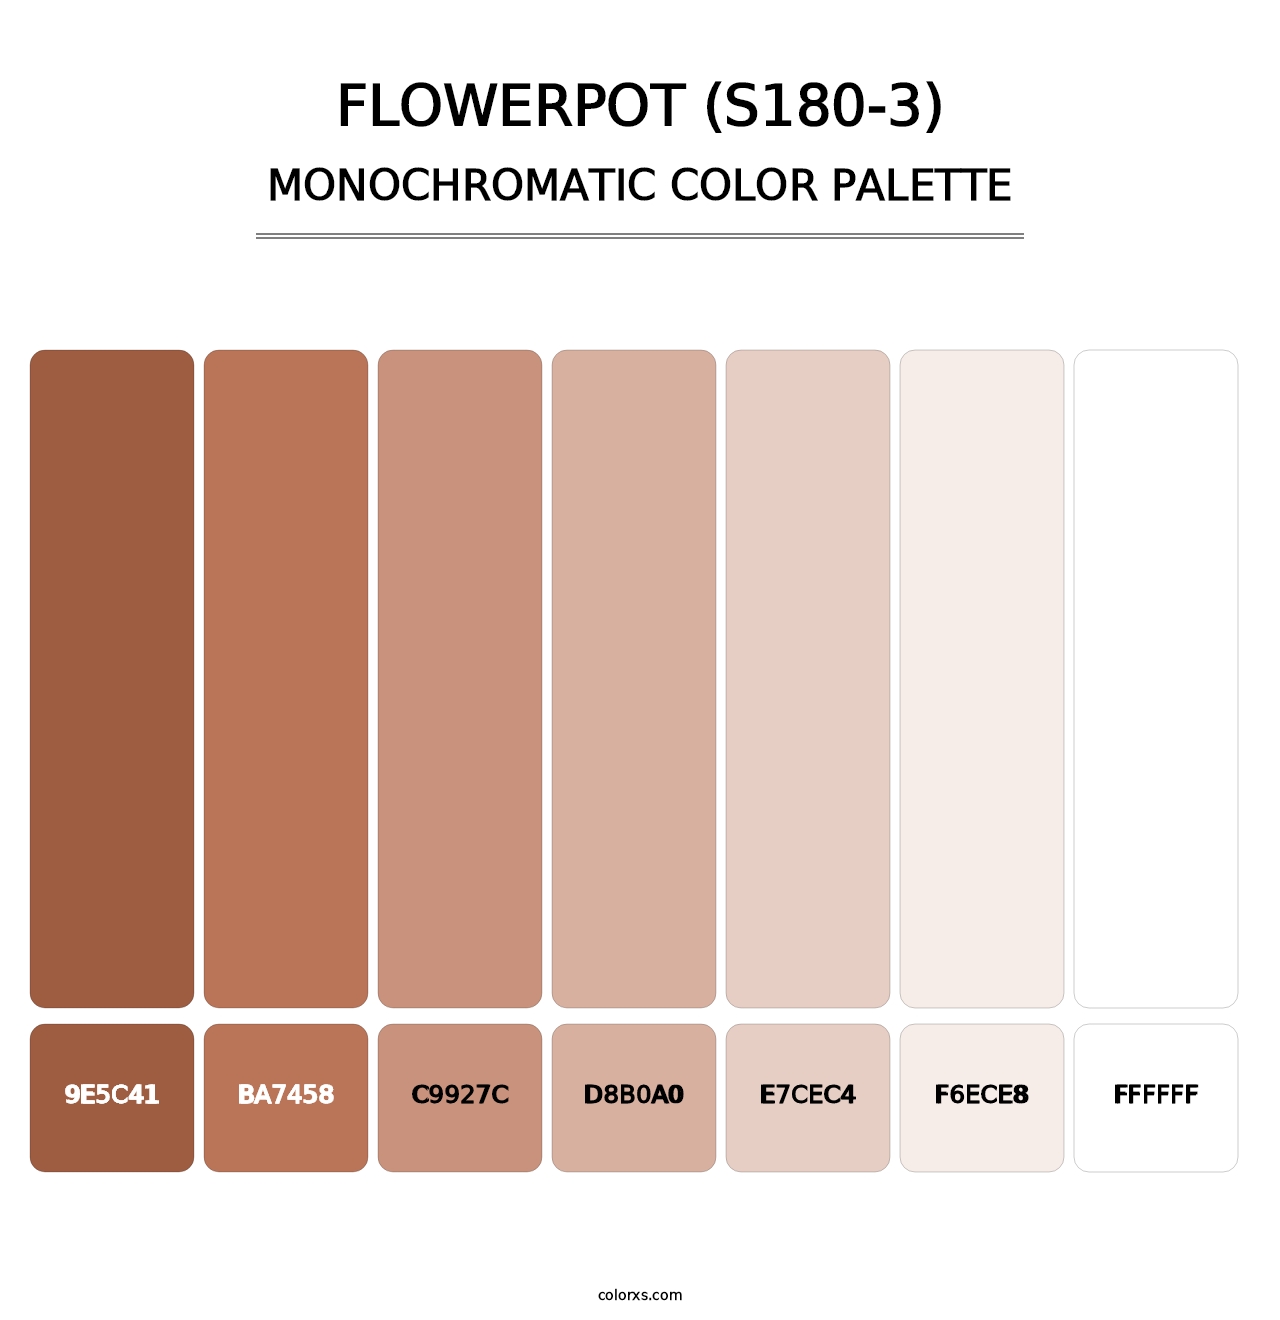 Flowerpot (S180-3) - Monochromatic Color Palette